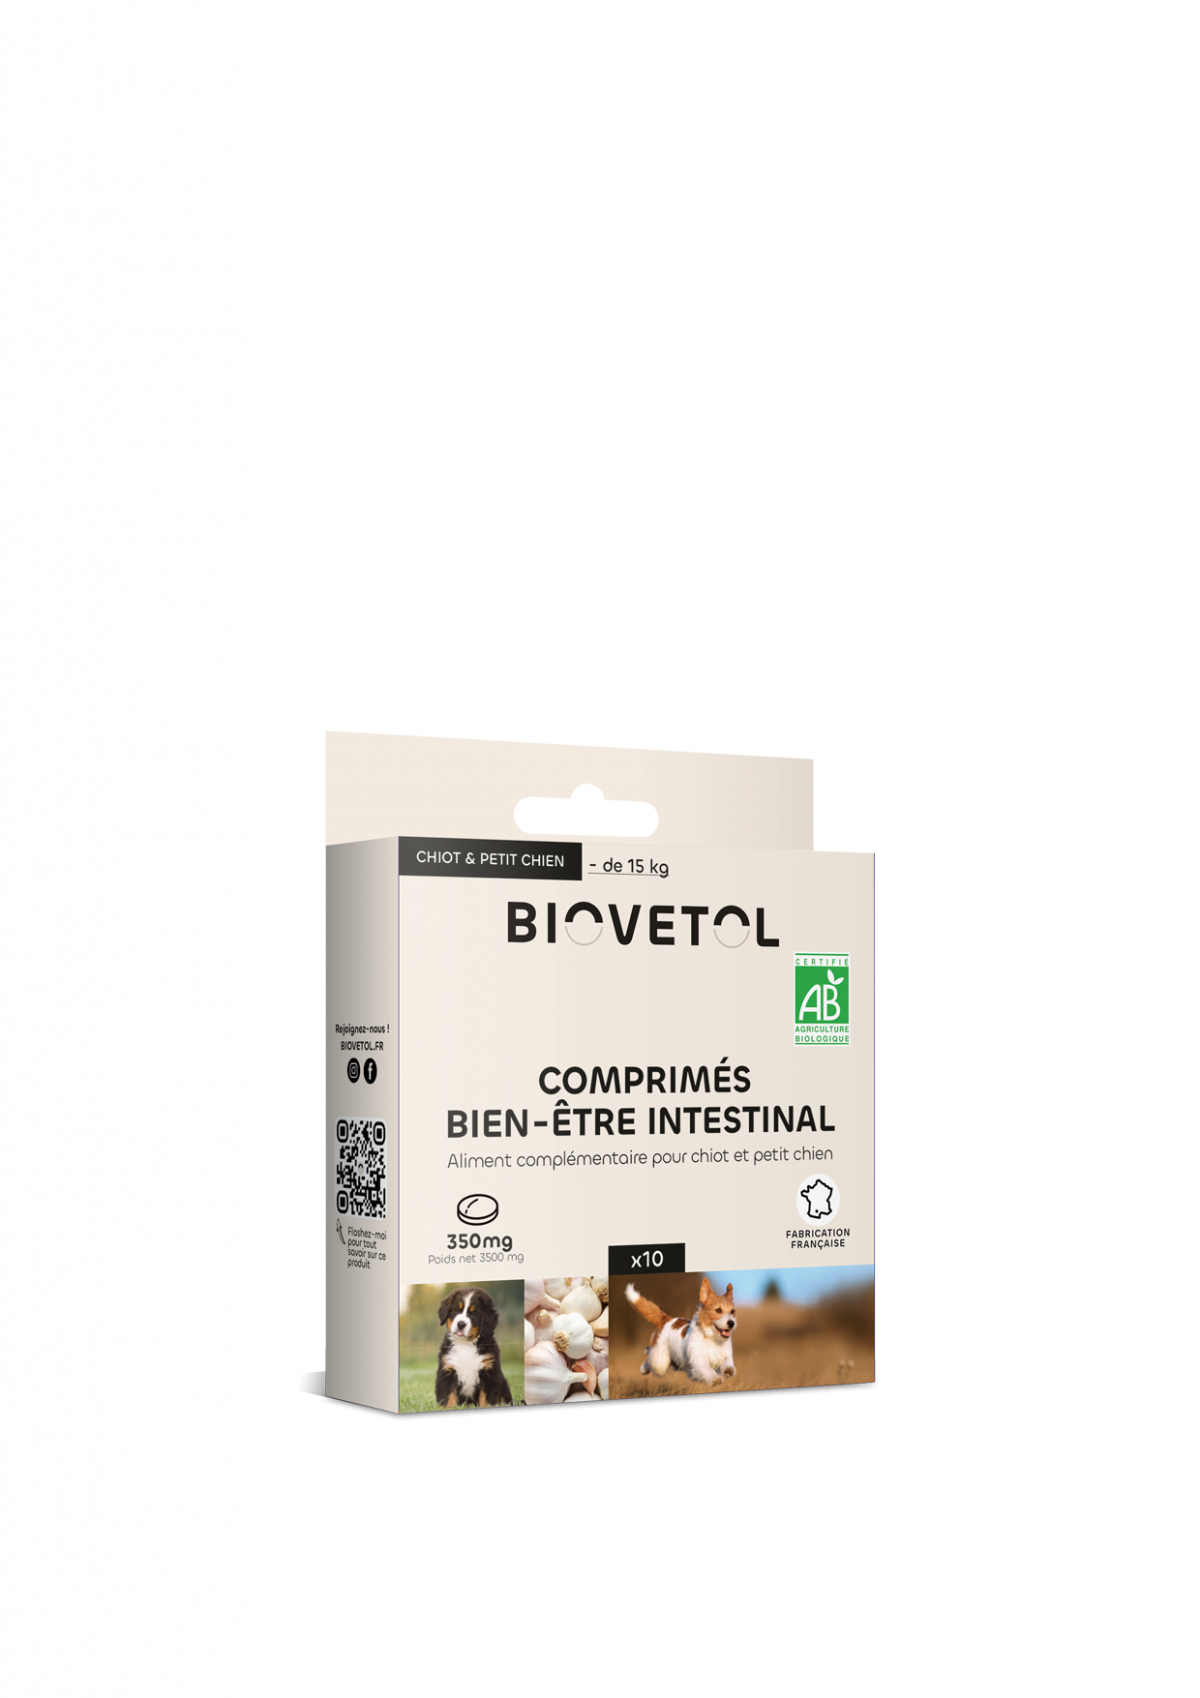 BIOVETOL Compresse benessere intestinale bio per cucciolo / piccolo cane